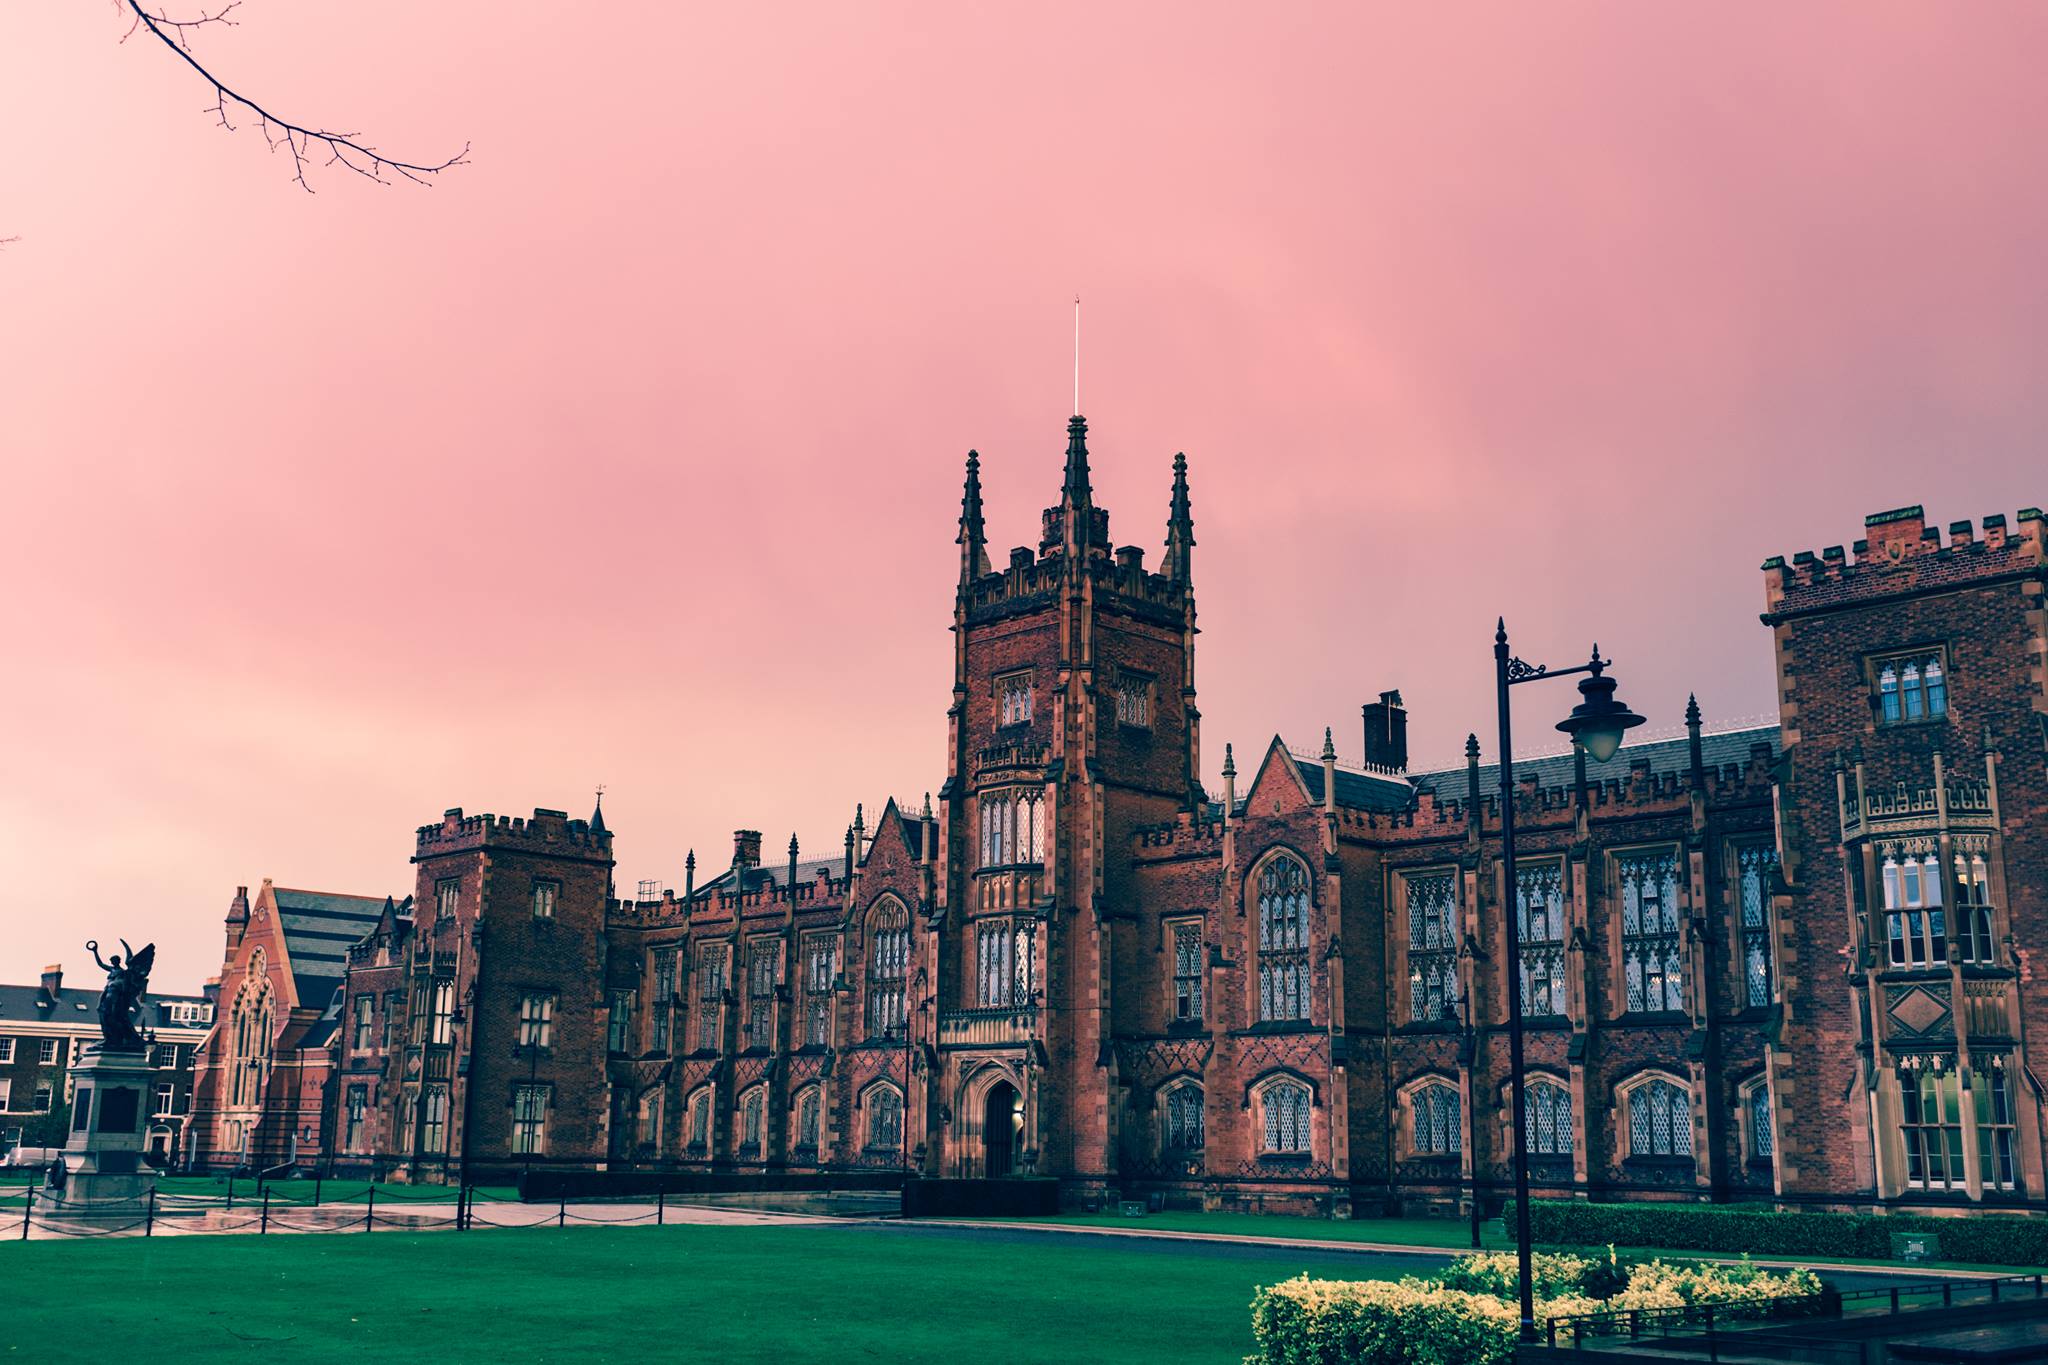 جامعة كوينز بلفاست – Queen’s University Belfast